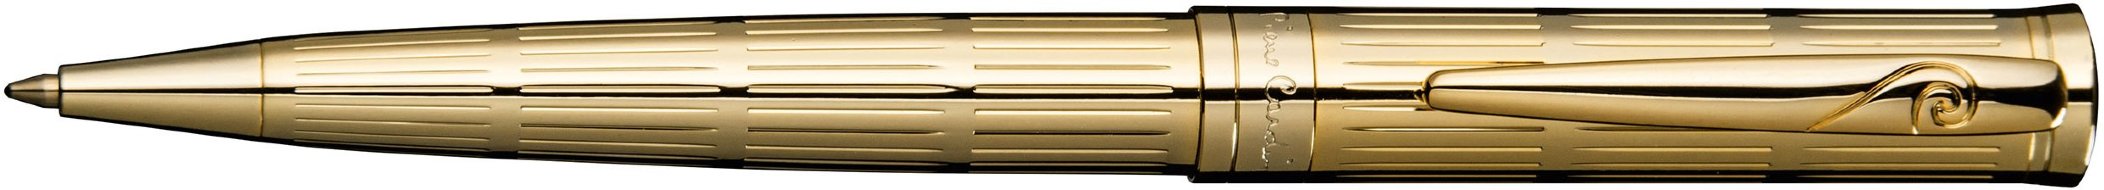 Шариковая ручка Pierre Cardin Avantage гравировка, позолота